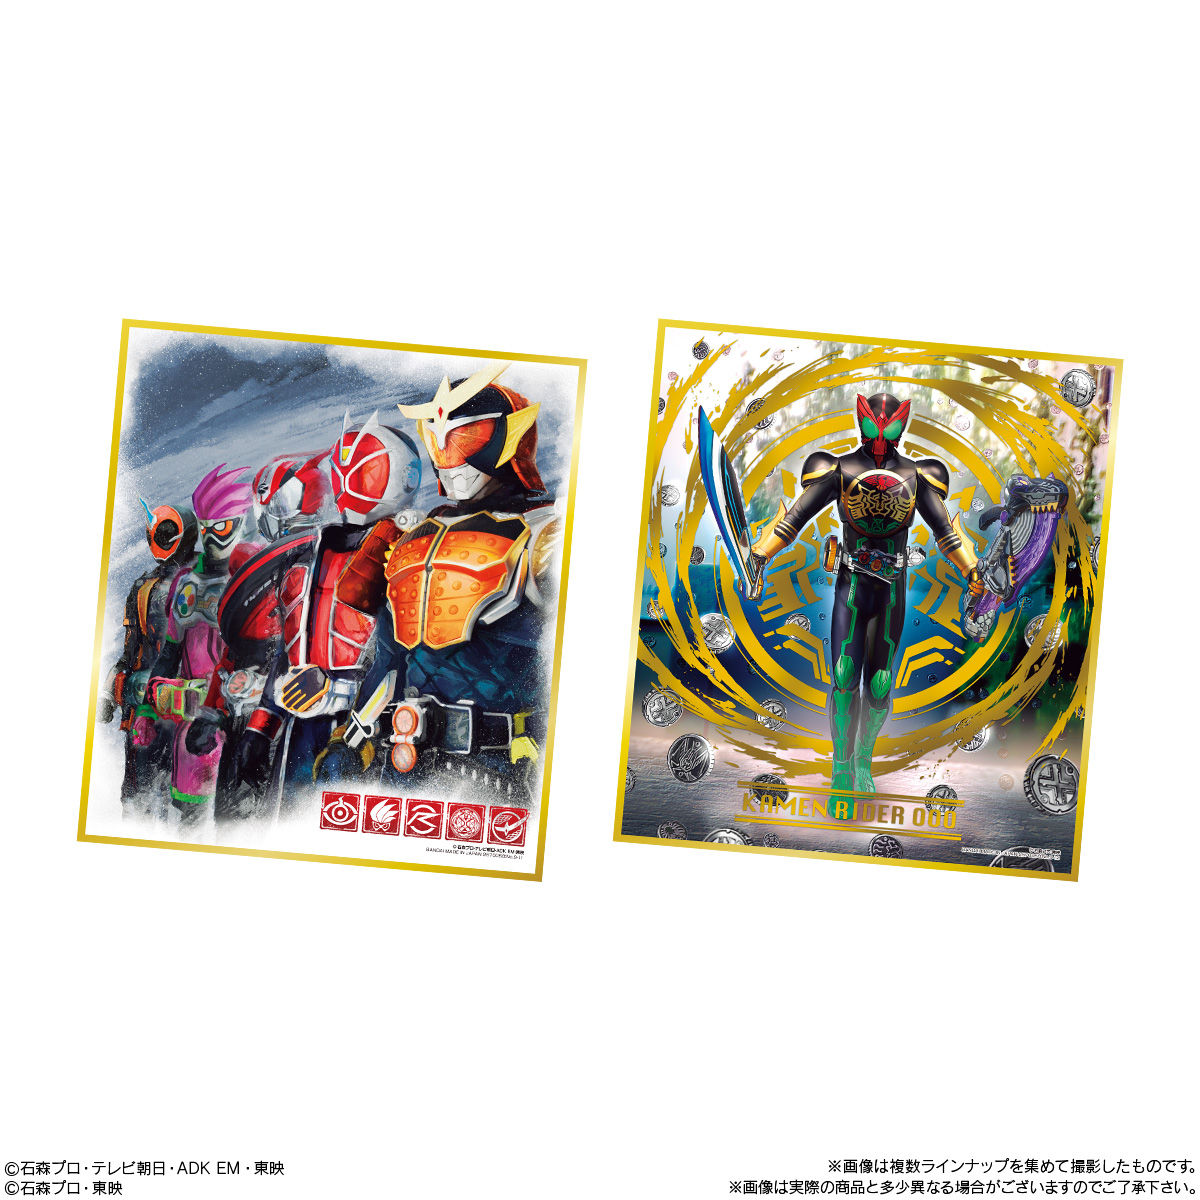 【食玩】『仮面ライダー色紙ART9』10個入りBOX-007